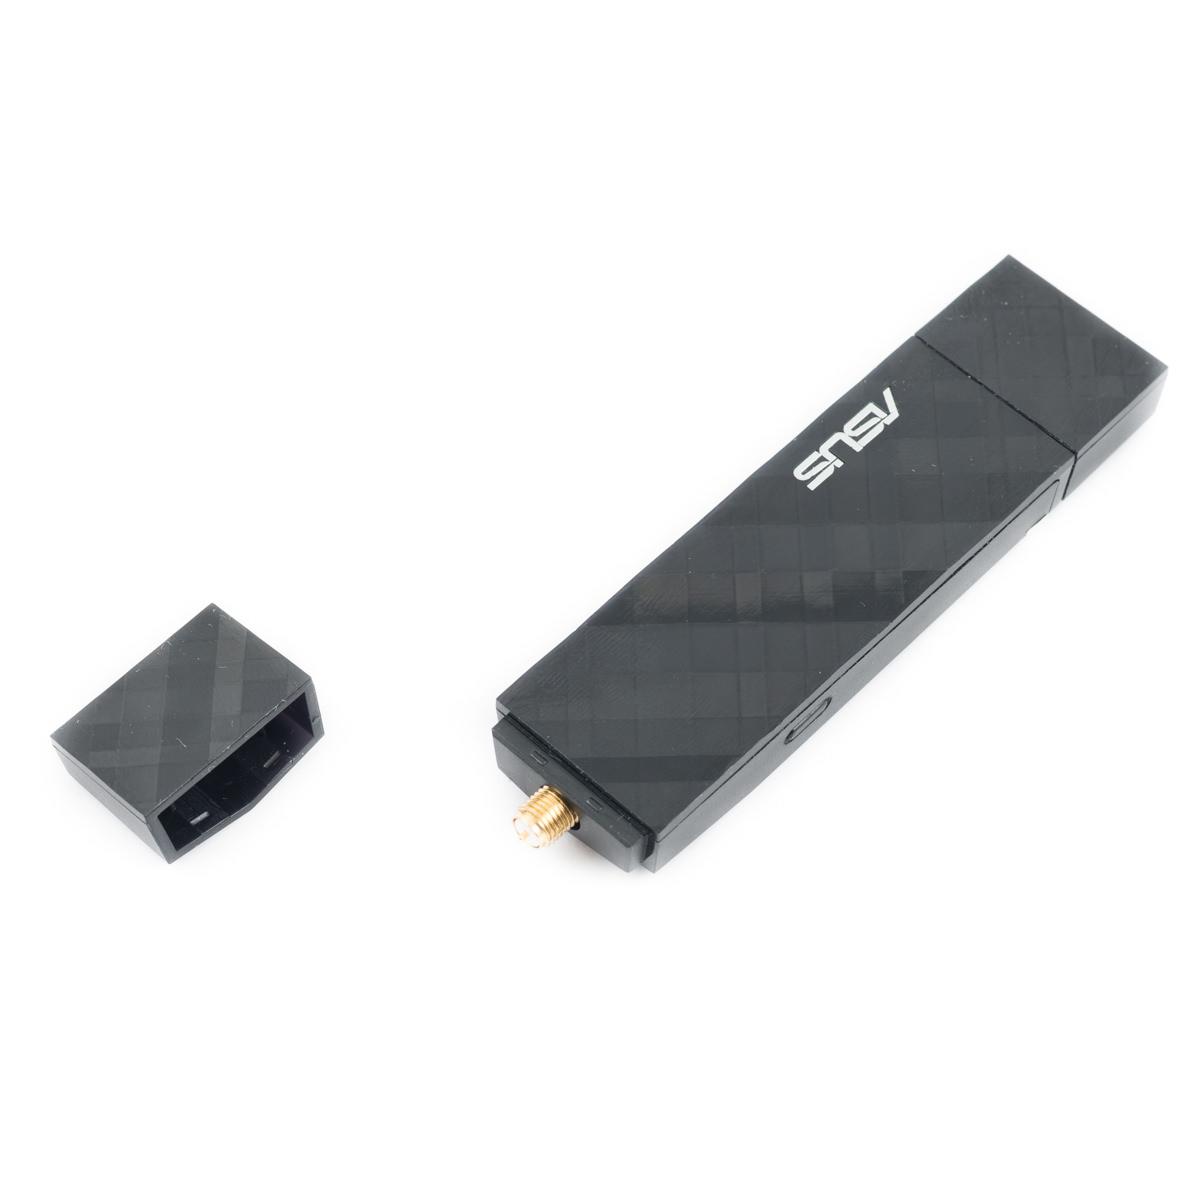 Обзор и тестирование беспроводных USB адаптеров ASUS USB-AC53 и ASUS USB-AC56